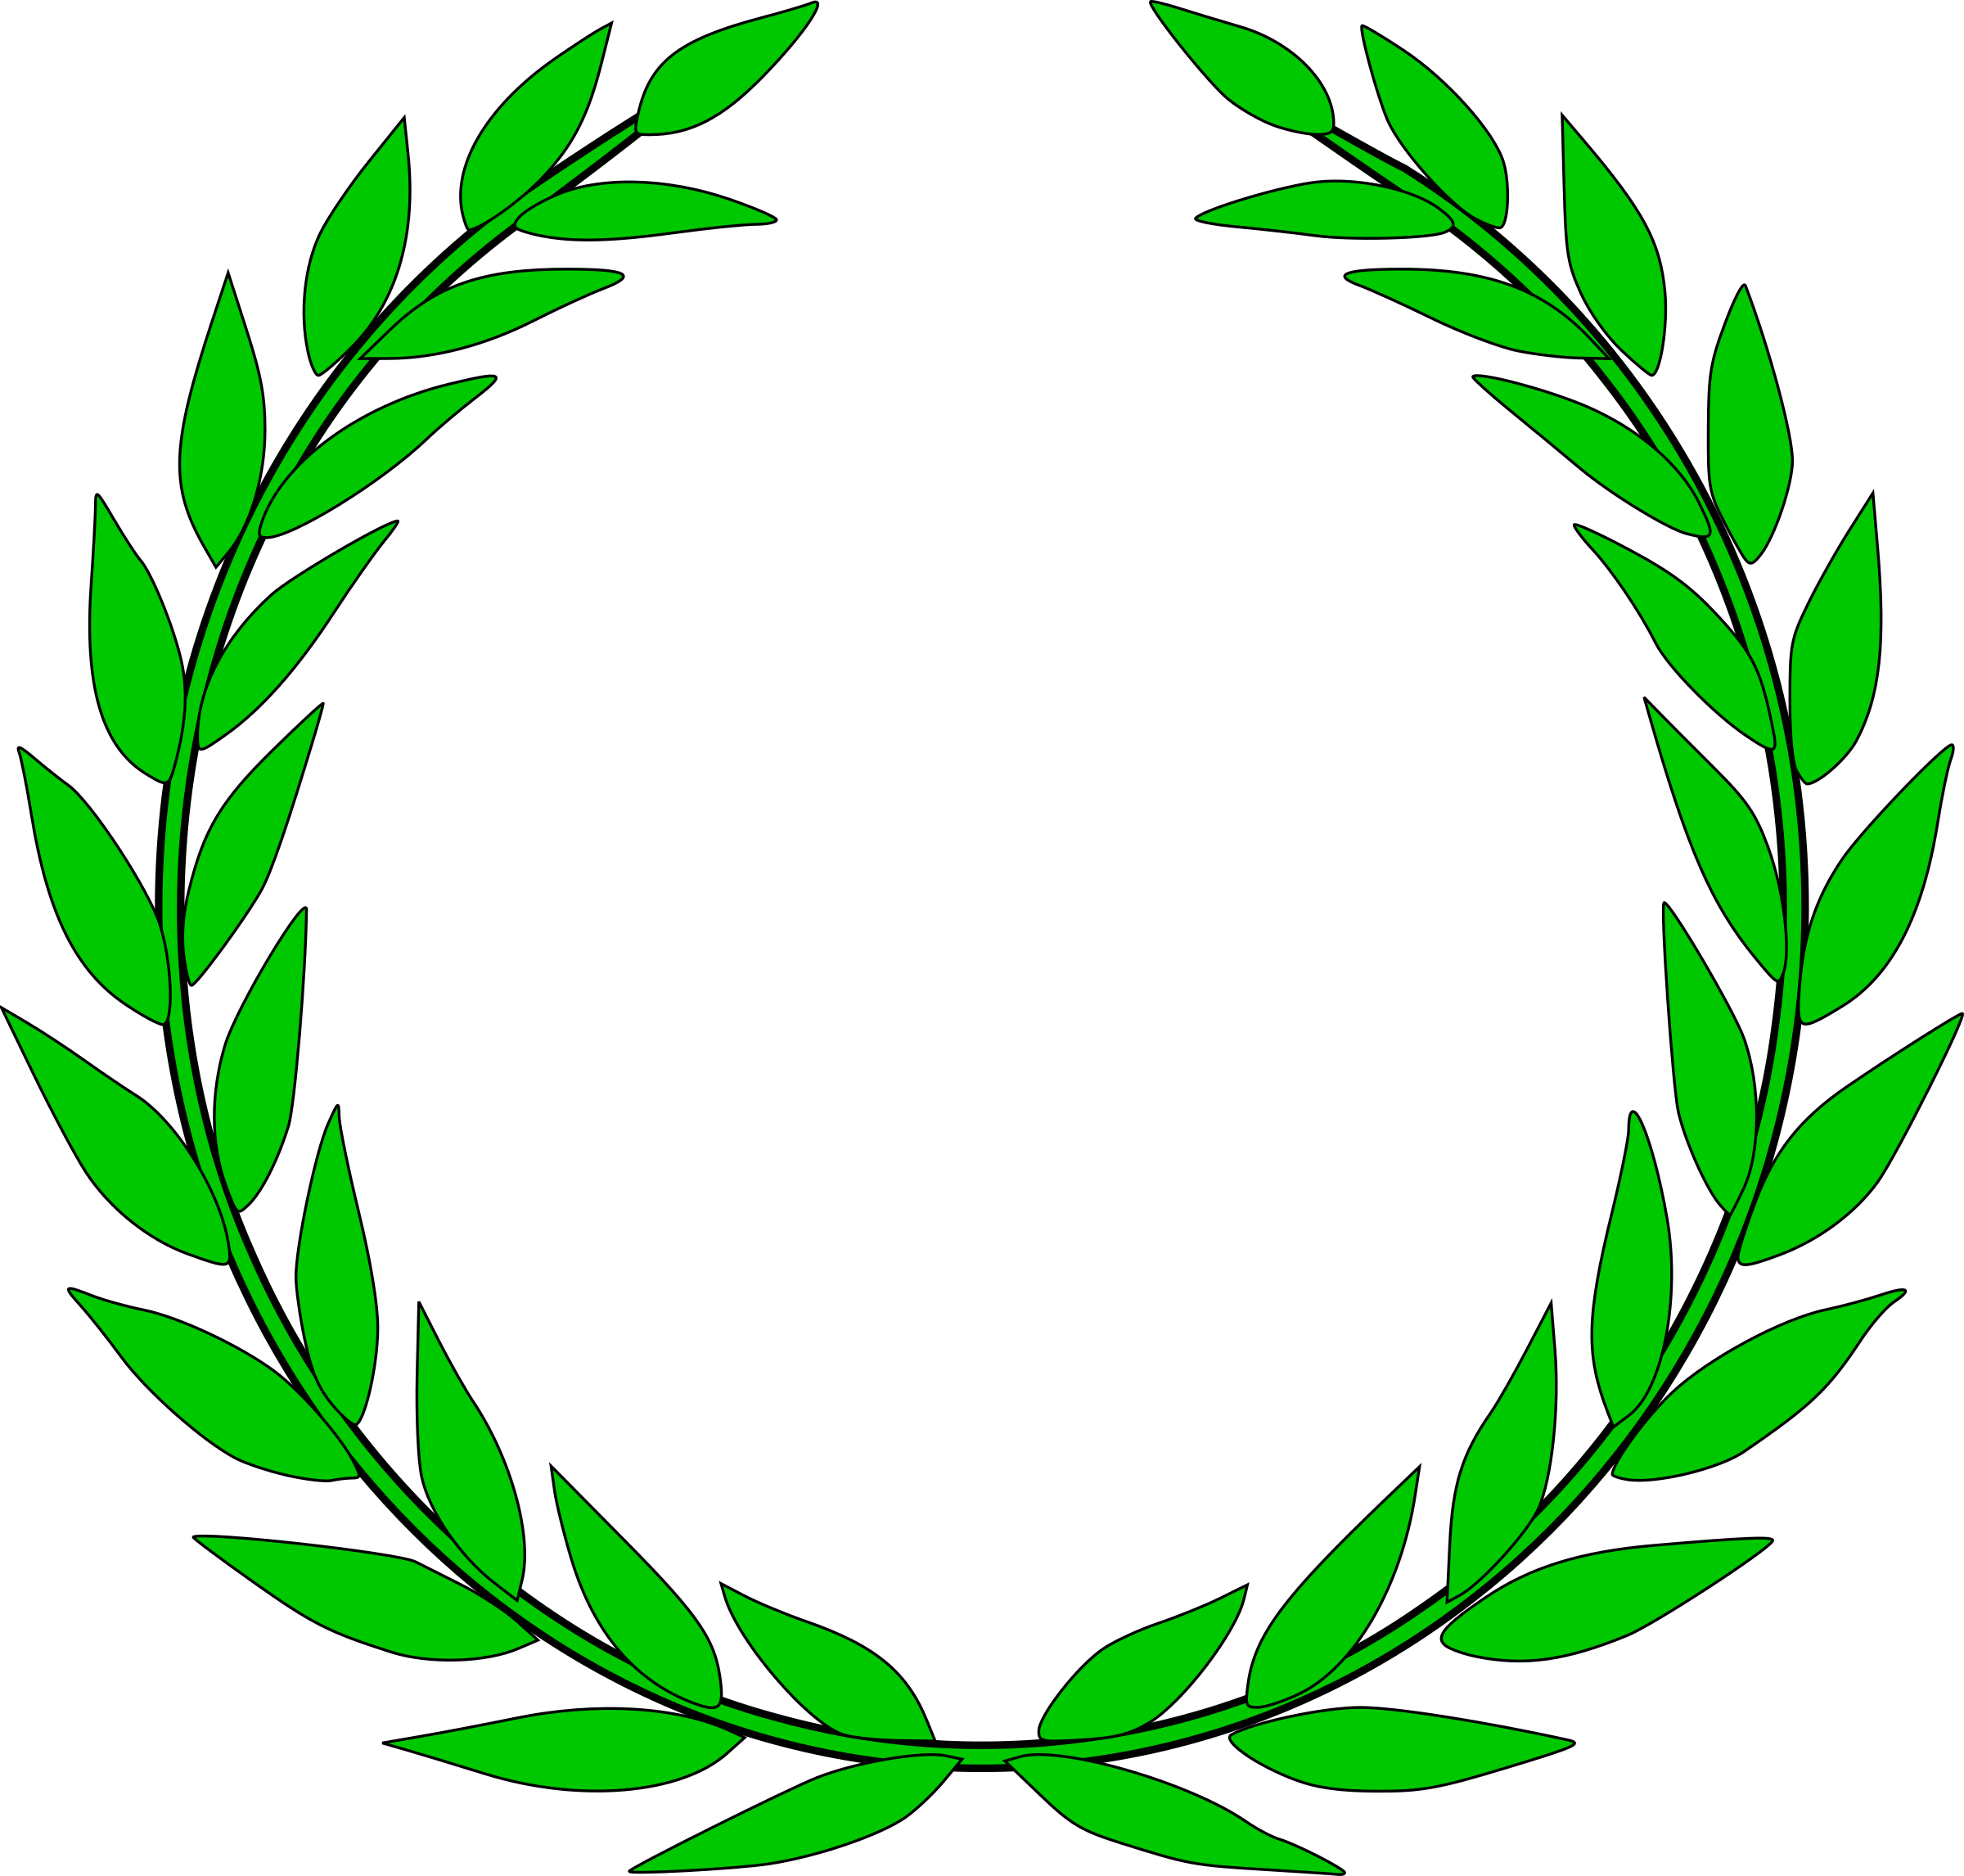 Зеленый полукруг